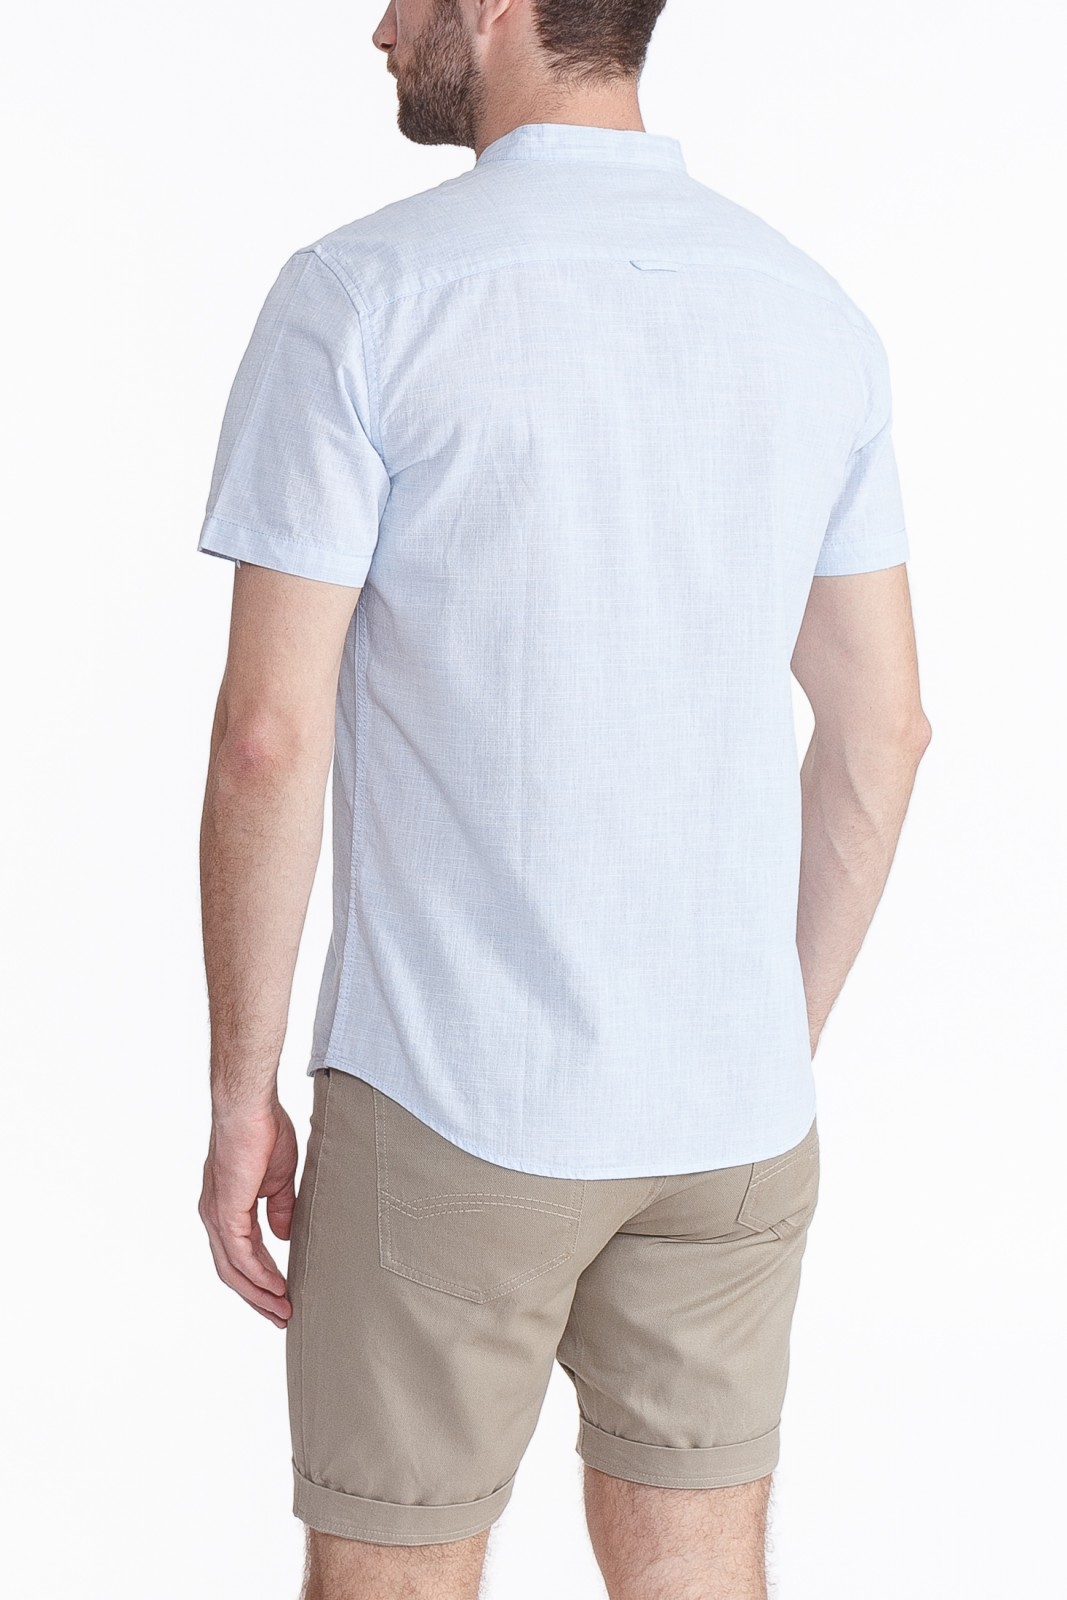 Рубашка с  короткими рукавами zolla 010262259041, цвет светло-голубой, размер S - фото 2